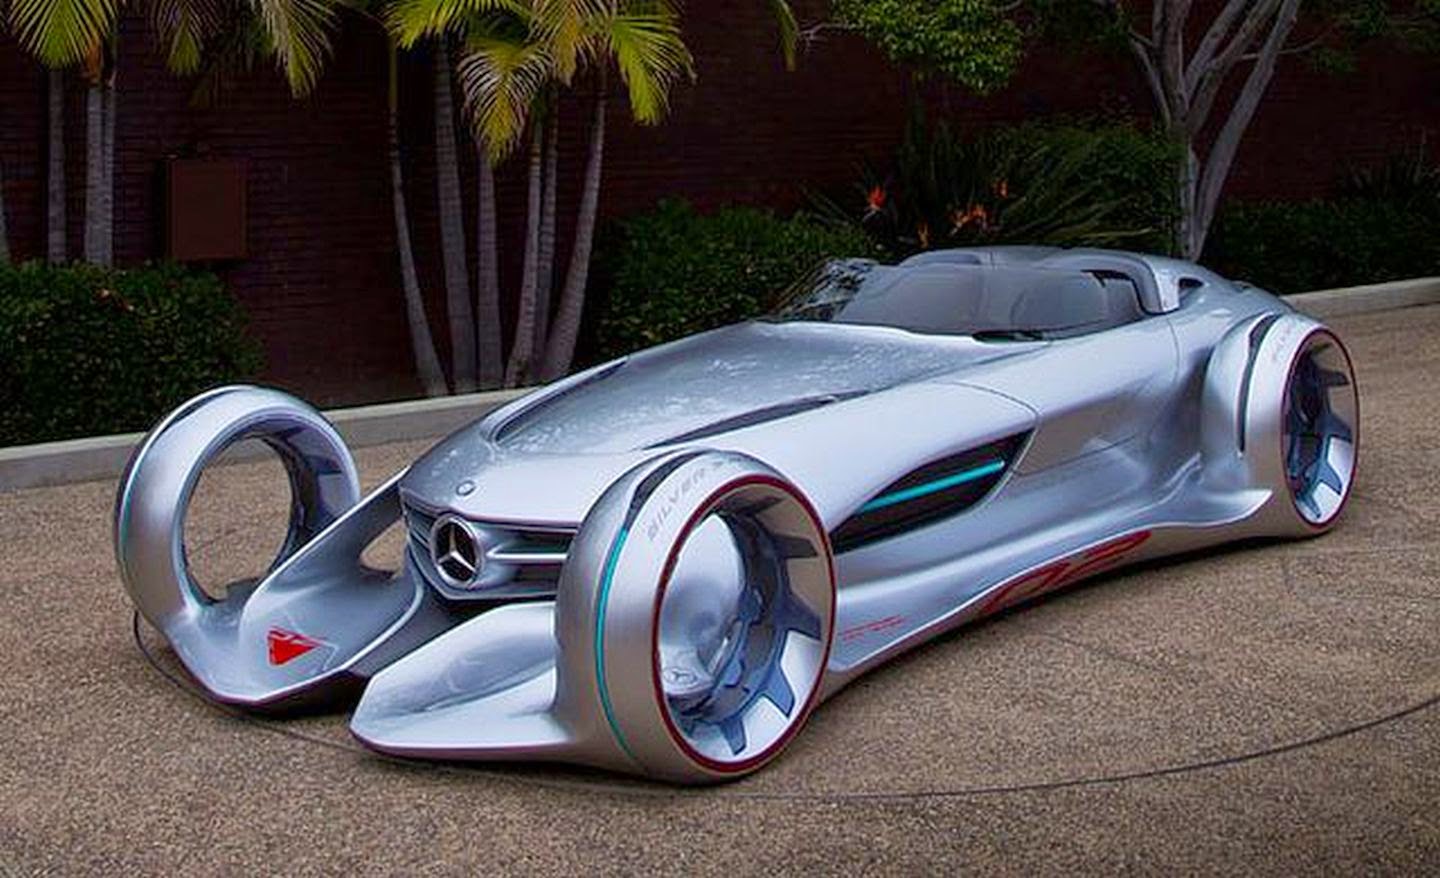 Mercedes silver arrow concept car #2